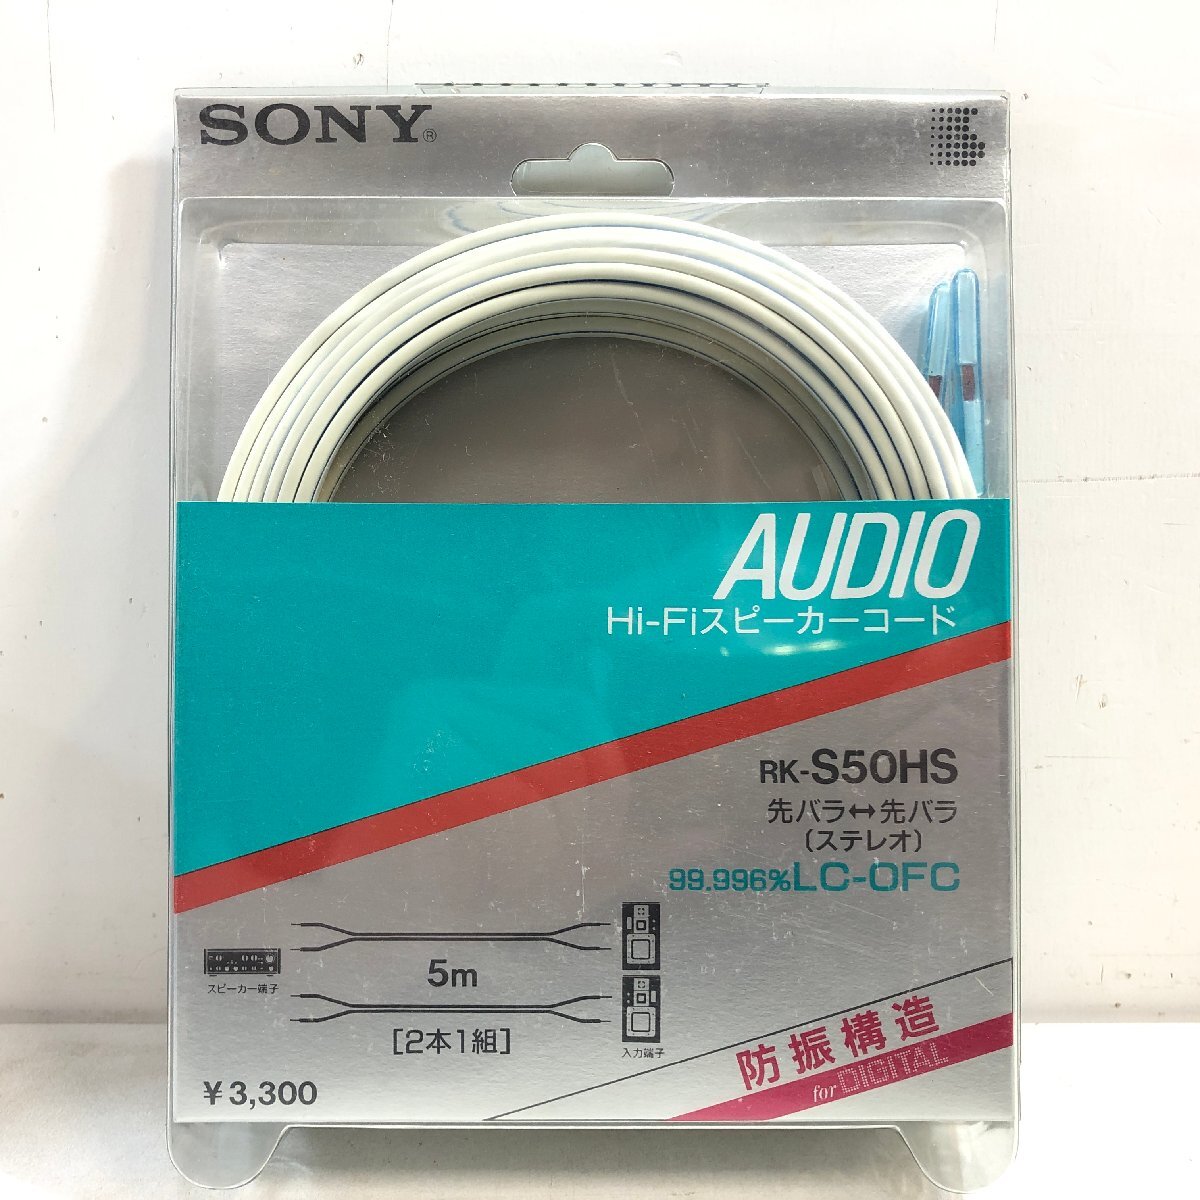 【未使用】SONY Hi-Fiスピーカーコード RK-S50HS 防振構造 99.996%LC-OFC / 2本1組 ソニー AUDIO ▲_画像1